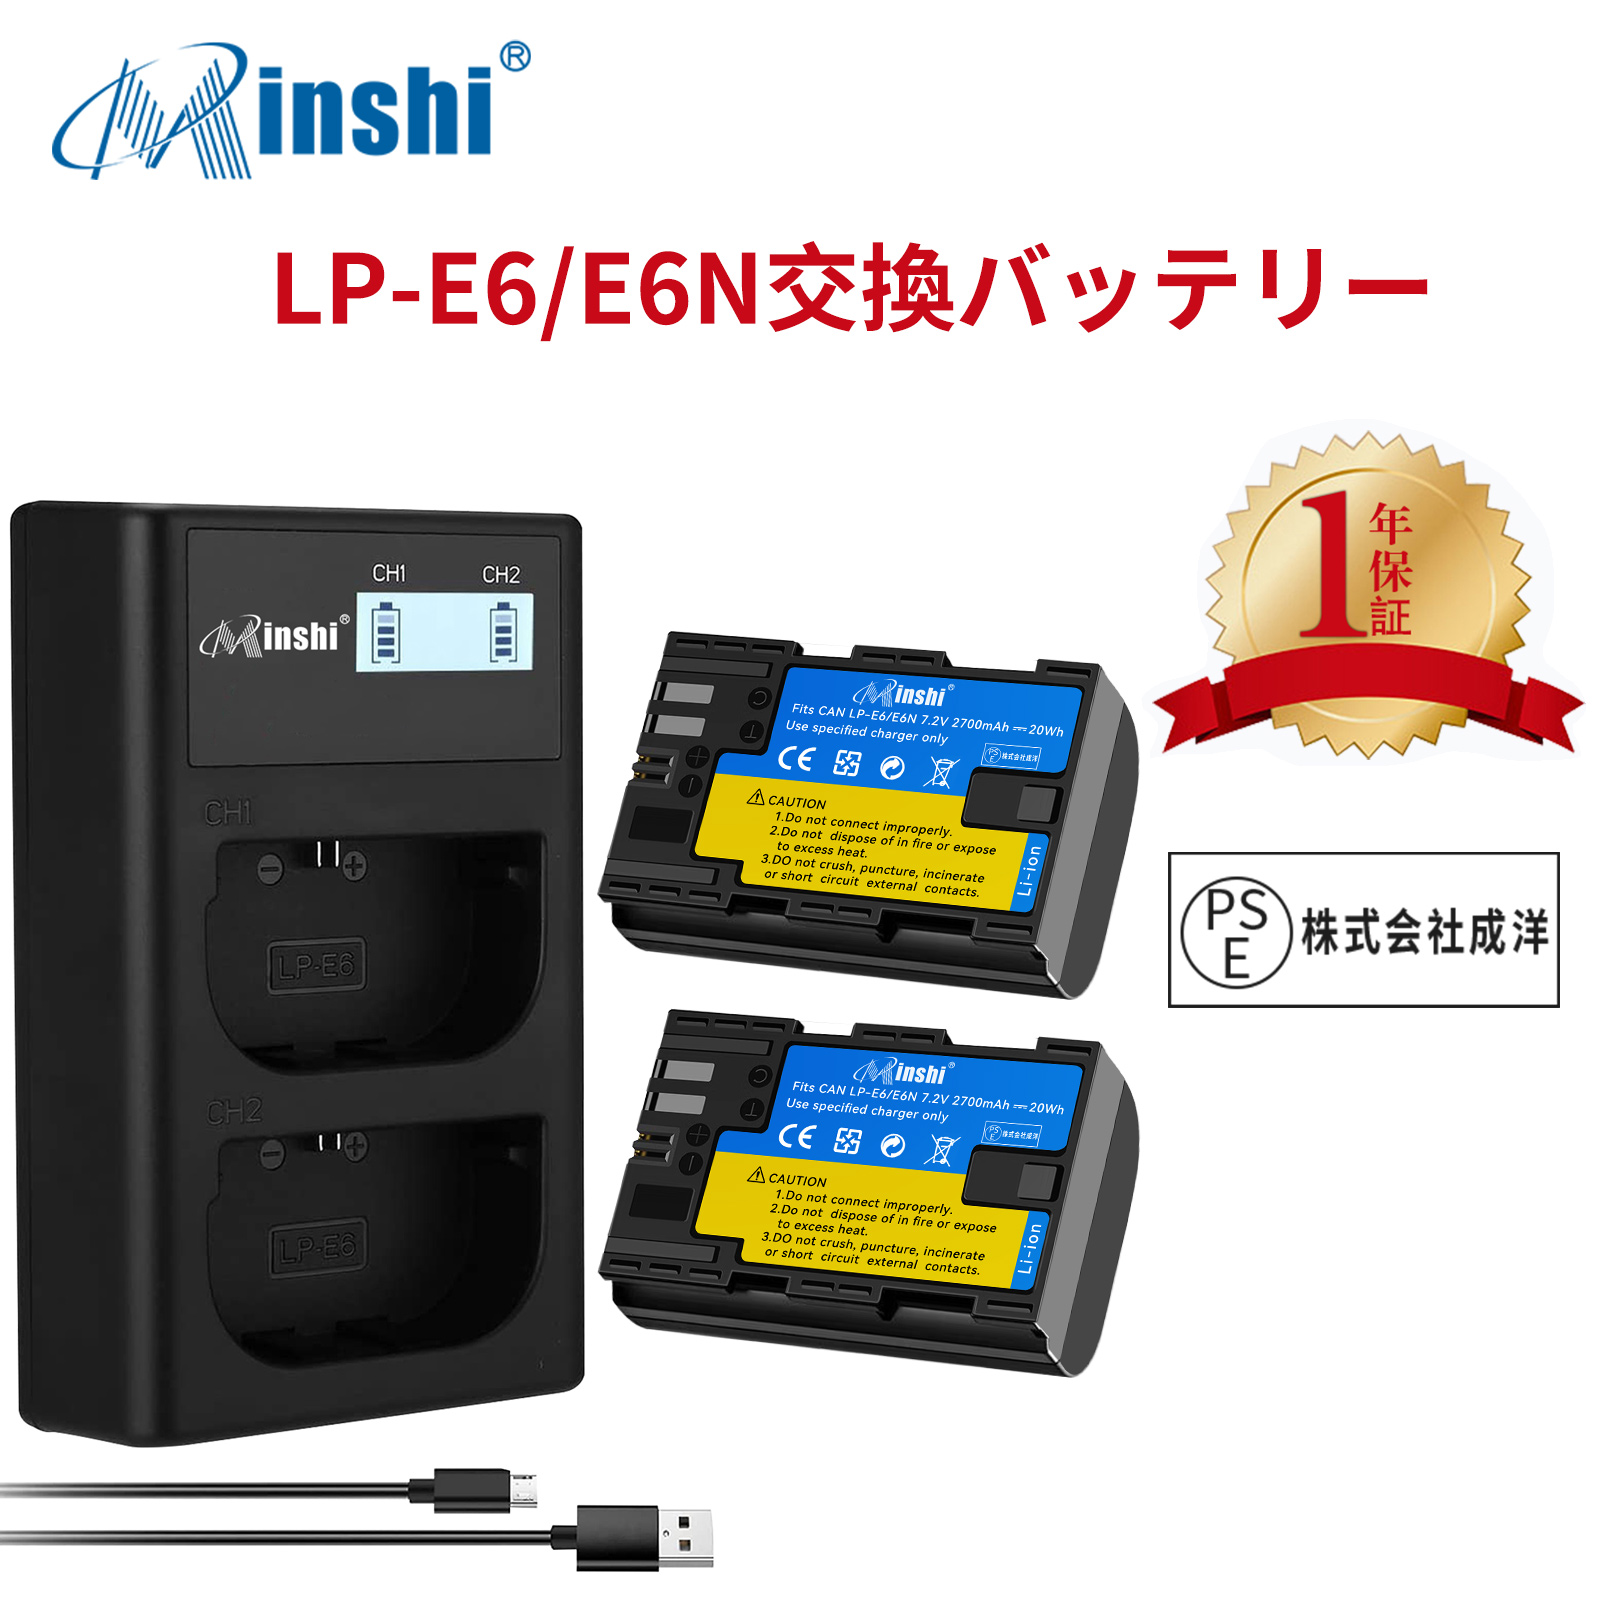 【２個セット】minshi Canon EOS 7D LP-E6 LP-E6N EOS6D CANON 80D 【2700mAh 7.2V】【互換急速USBチャージャー】 高品質LP-E6NH交換用バッテリー